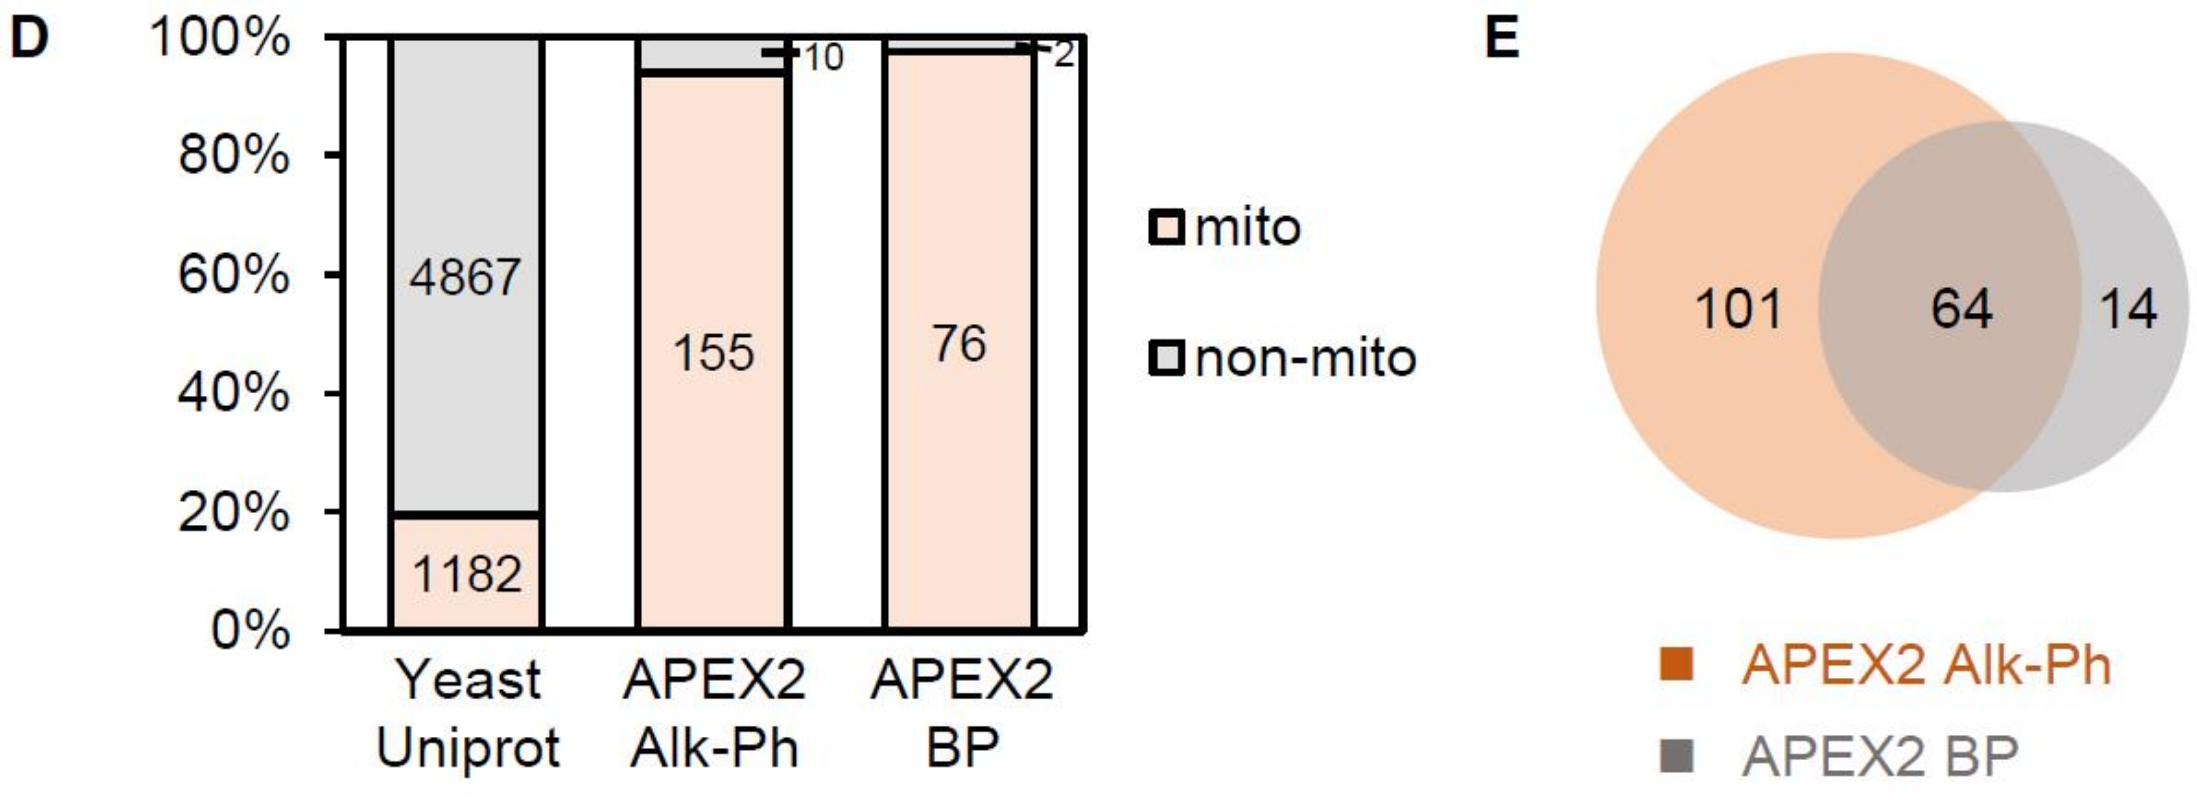 图1 The higher efficiency of Alk-Ph labeling in yeast<sup>[6]</sup>. (D) Analysis of the mitochondrial specificity of APEX2 labeling. Left: proteins with prior mitochondrial annotations in the entire S. cerevisiae proteome (from Uniprot database). Middle: our mitochondrial matrix proteome labeled with Alk-Ph. Right: previous mitochondrial matrix proteome labeled with BP. (E) Comparison of the APEX2-labeling coverage with Alk-Ph and BP probes.